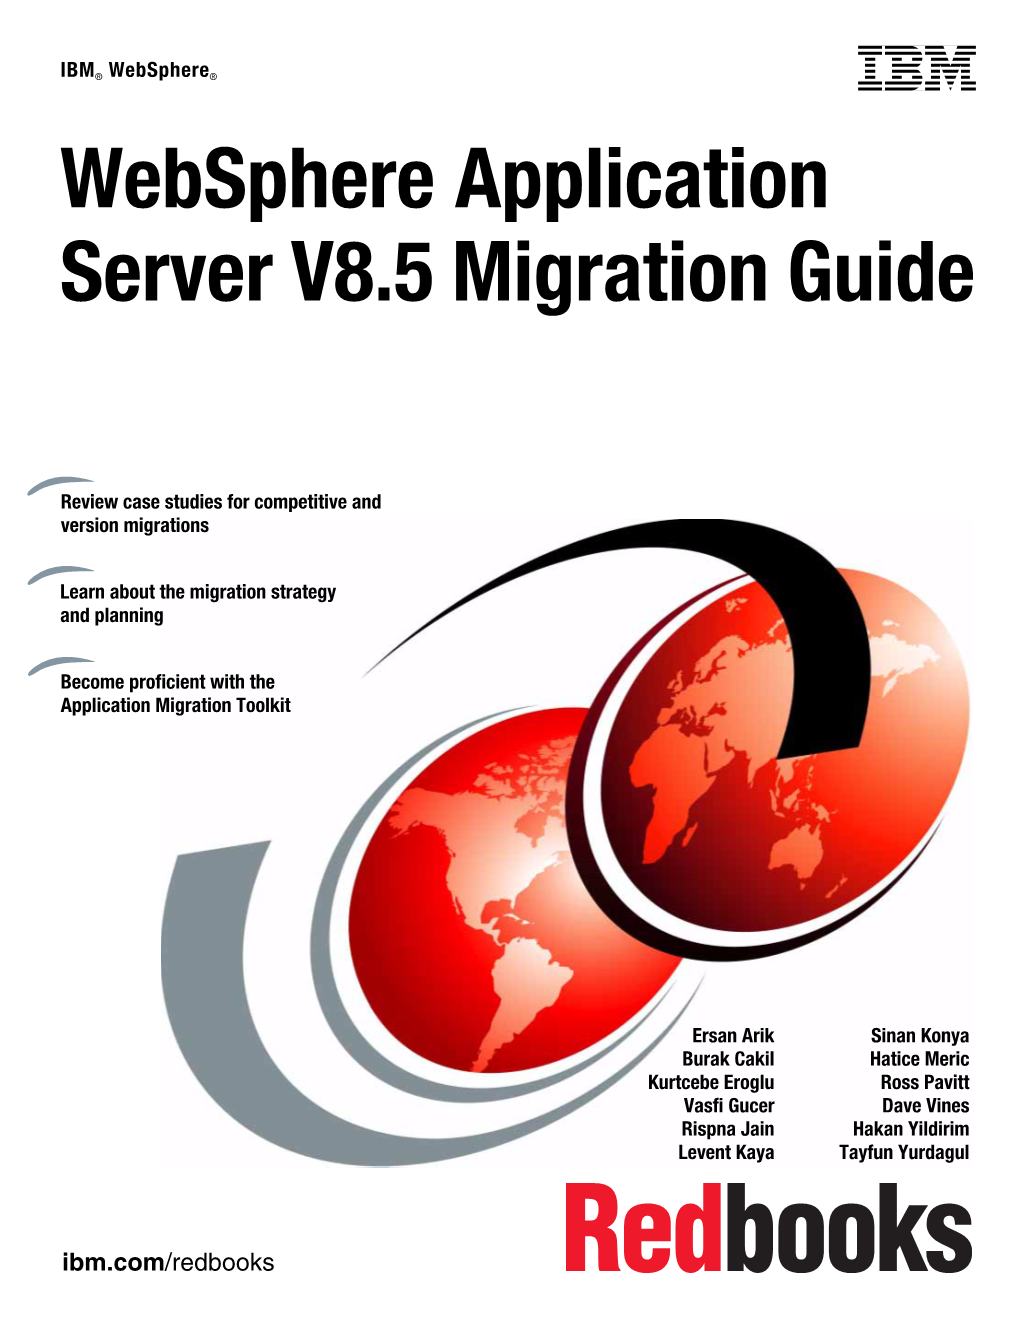 Websphere Application Server V8.5 Migration Guide